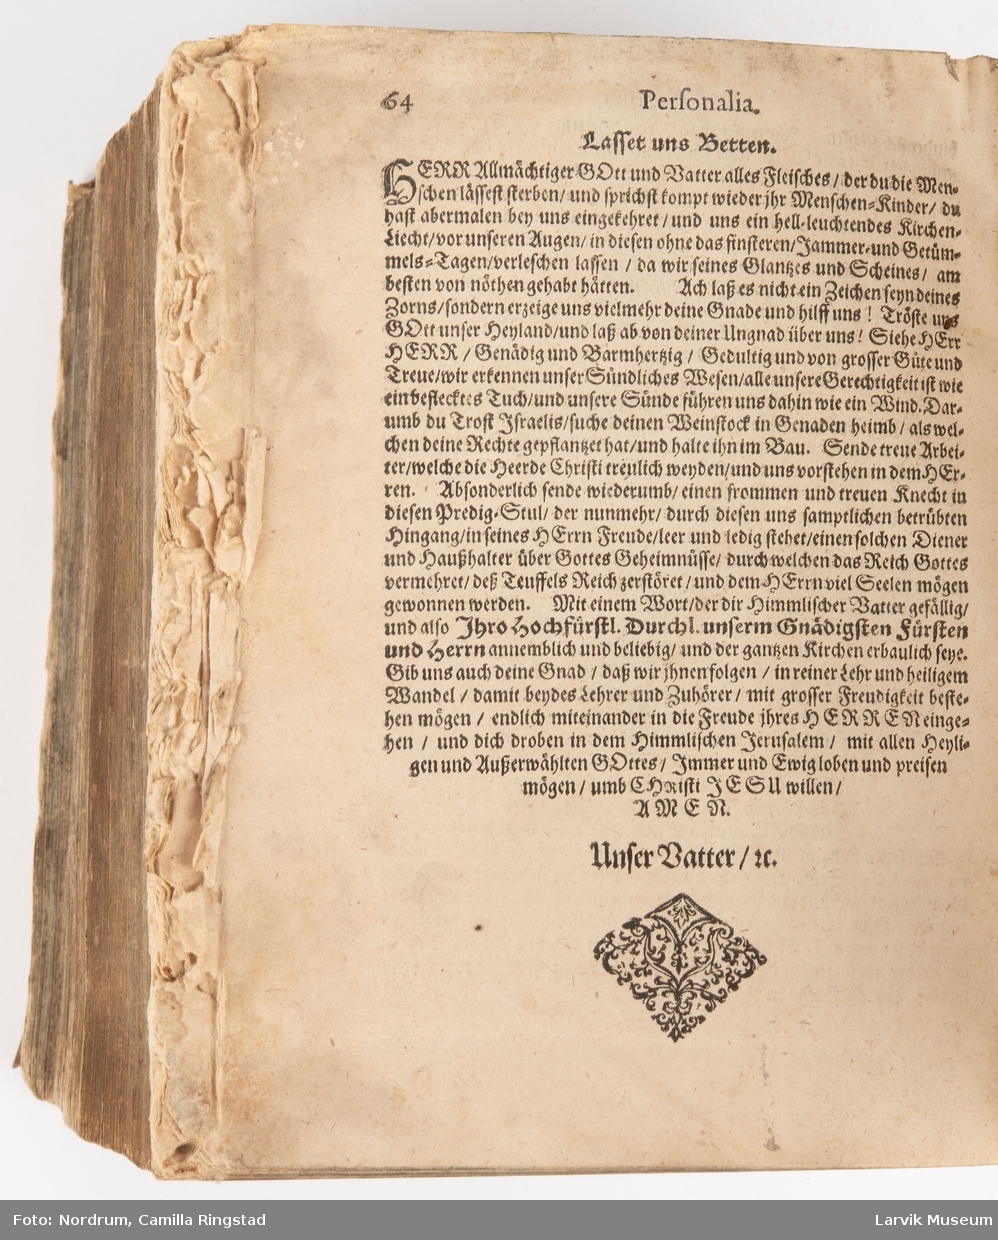 Daglig kristne taler og epistler fra 1677
Utgitt i 1680 i Frankfurt am Main